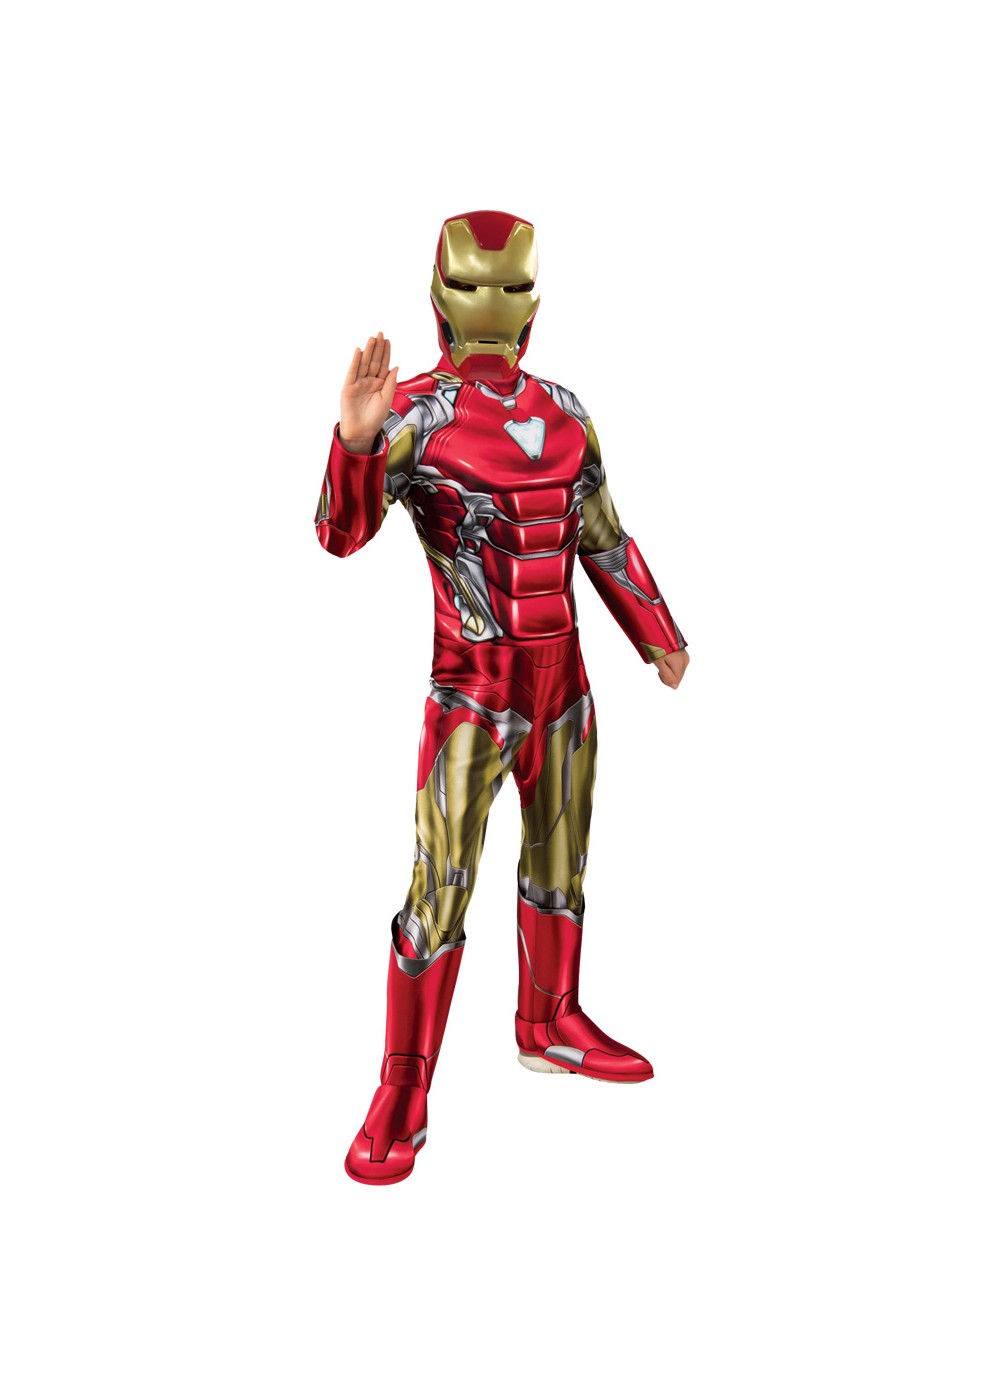 Boys Endgame Iron Man Costume